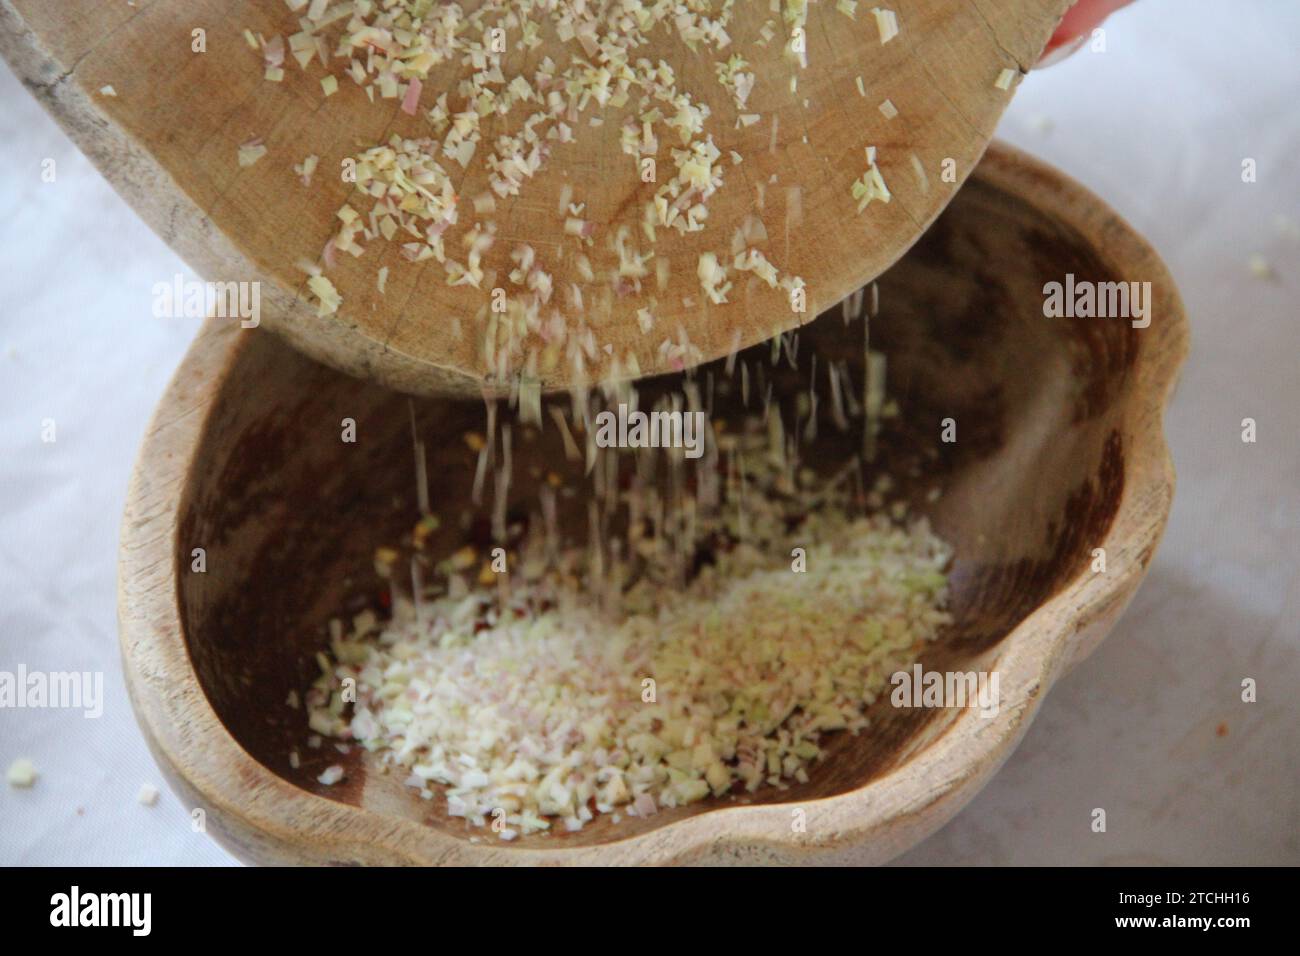 Eine Holzschale mit einem Sieb, das mit einer kleinen Menge Getreidekörner gefüllt ist. Stockfoto